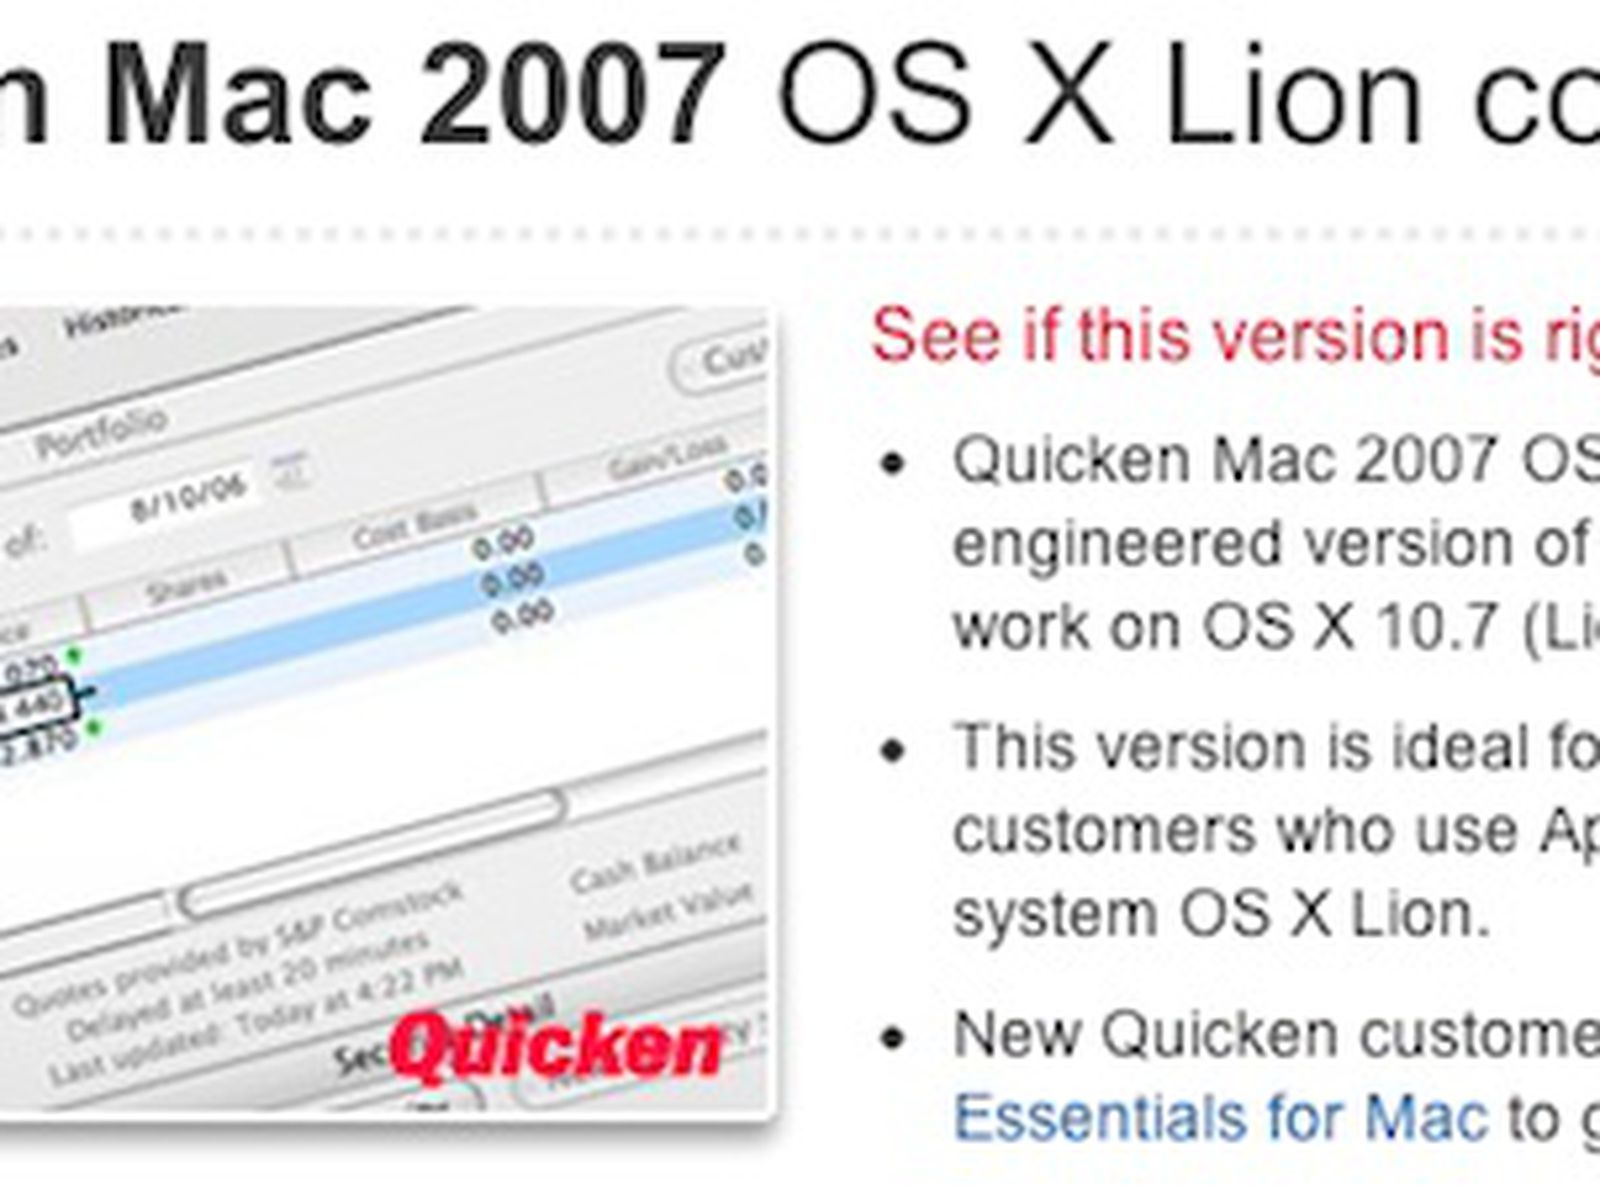 quicken for mac 10.8.5